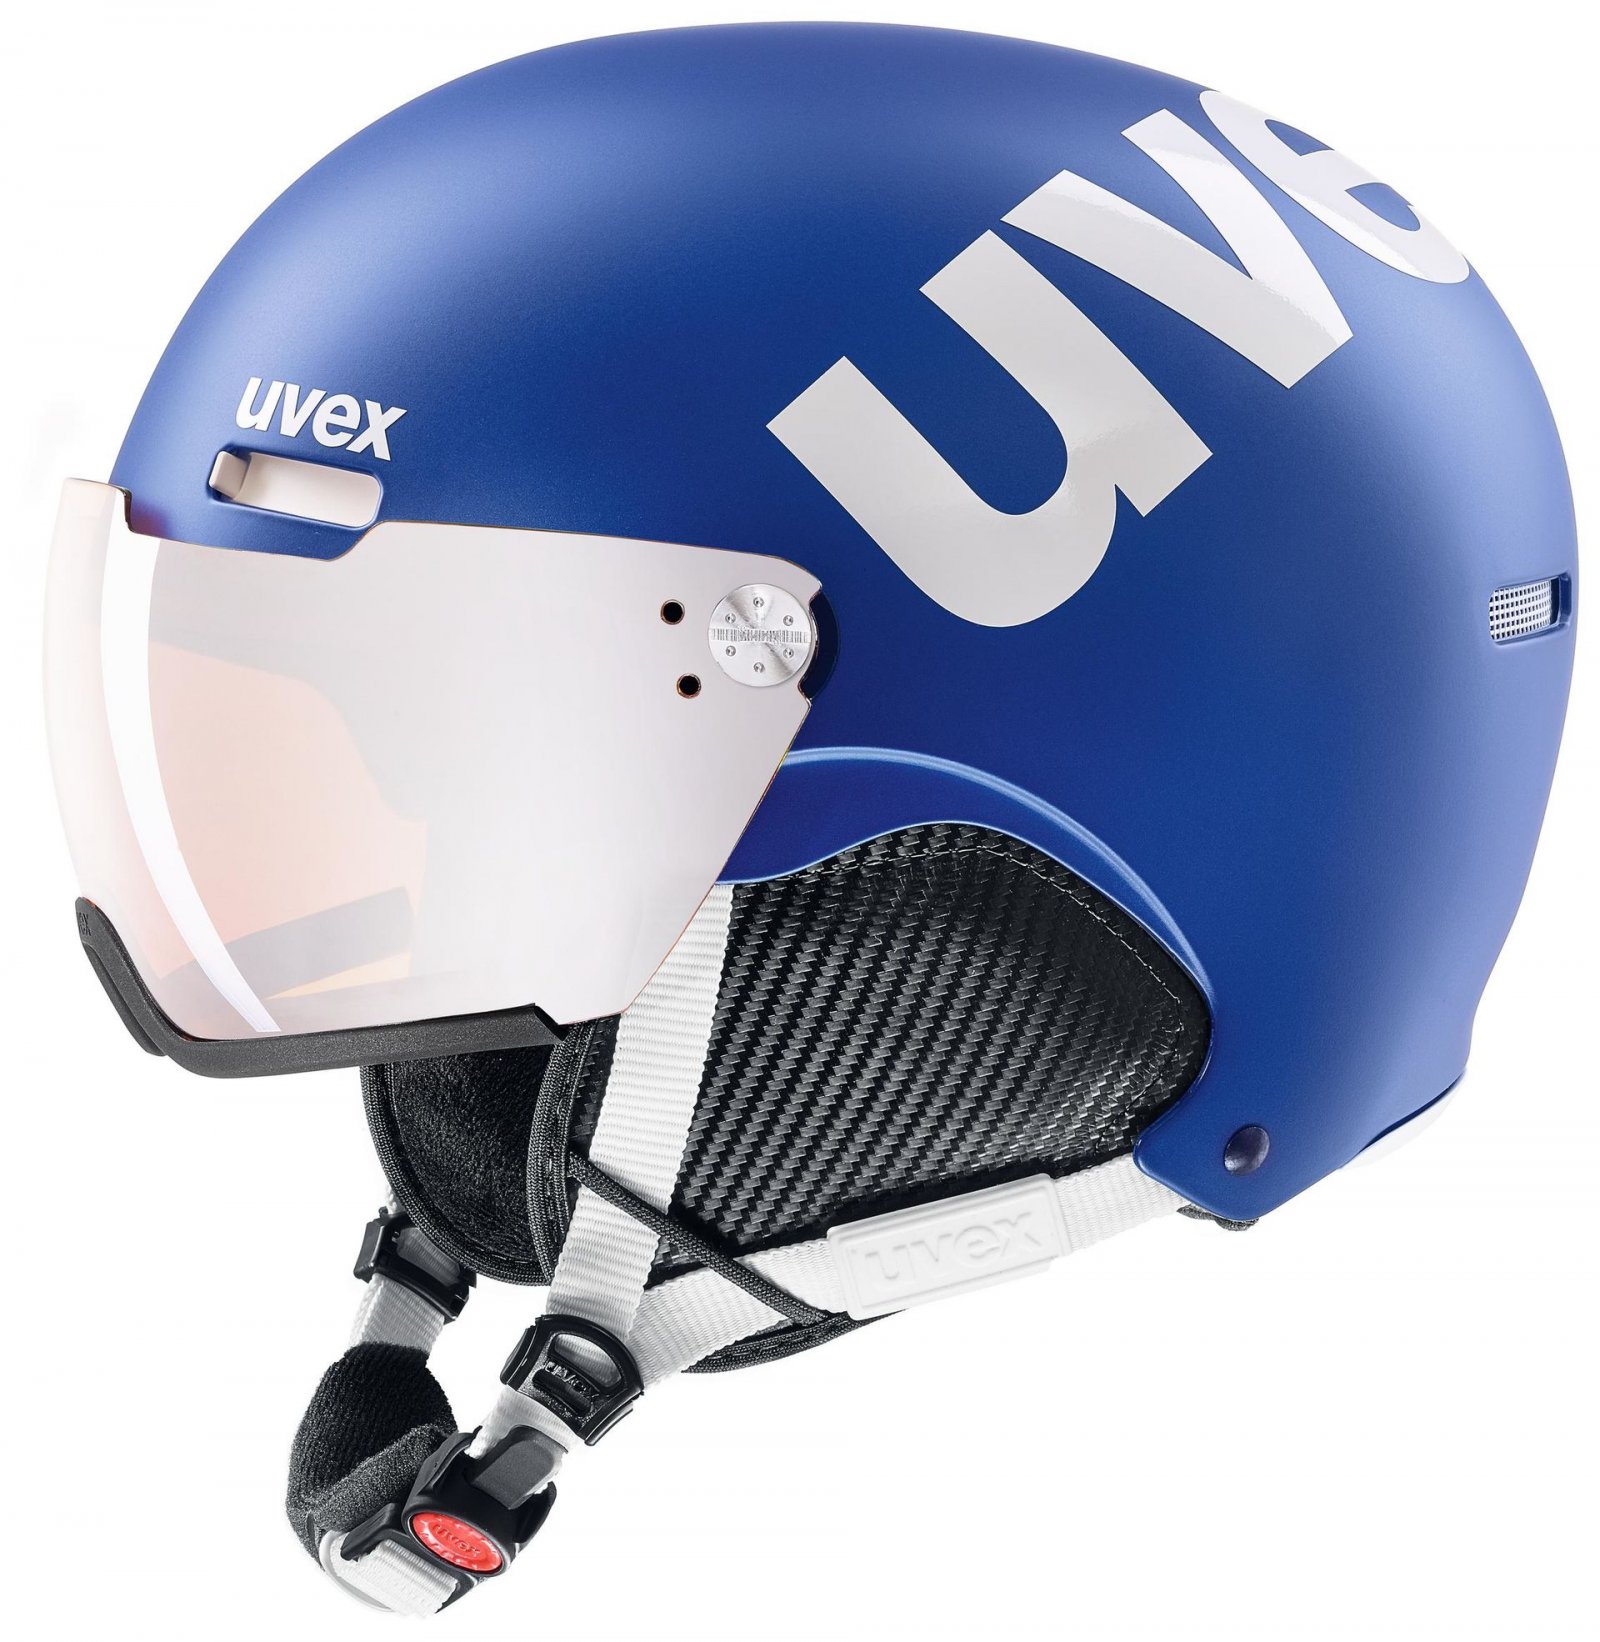 Ski helmet UVEX hlmt 500 visor 20/21